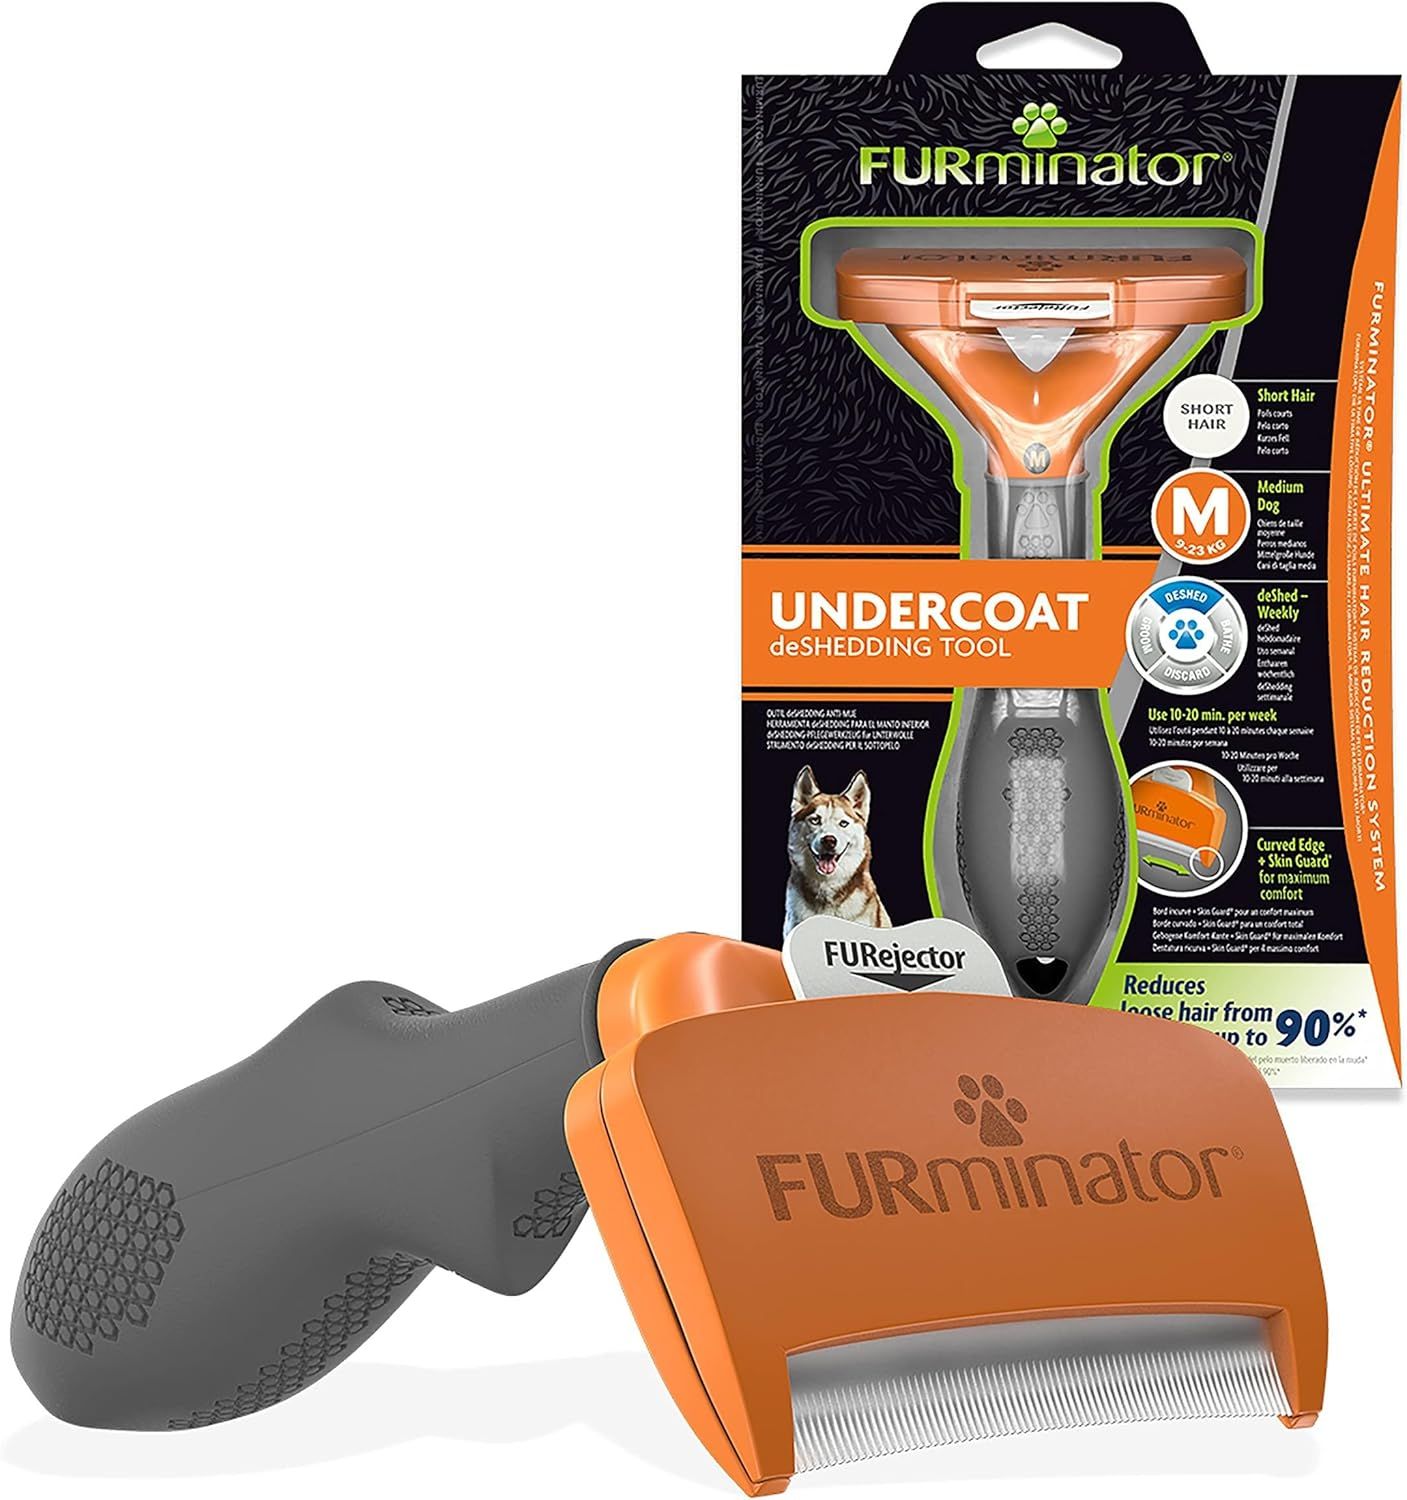 FURminator Undercoat deShedding Tool for Medium Short Hair Dogs 9-23 kg, T691665 | Amazon (US)